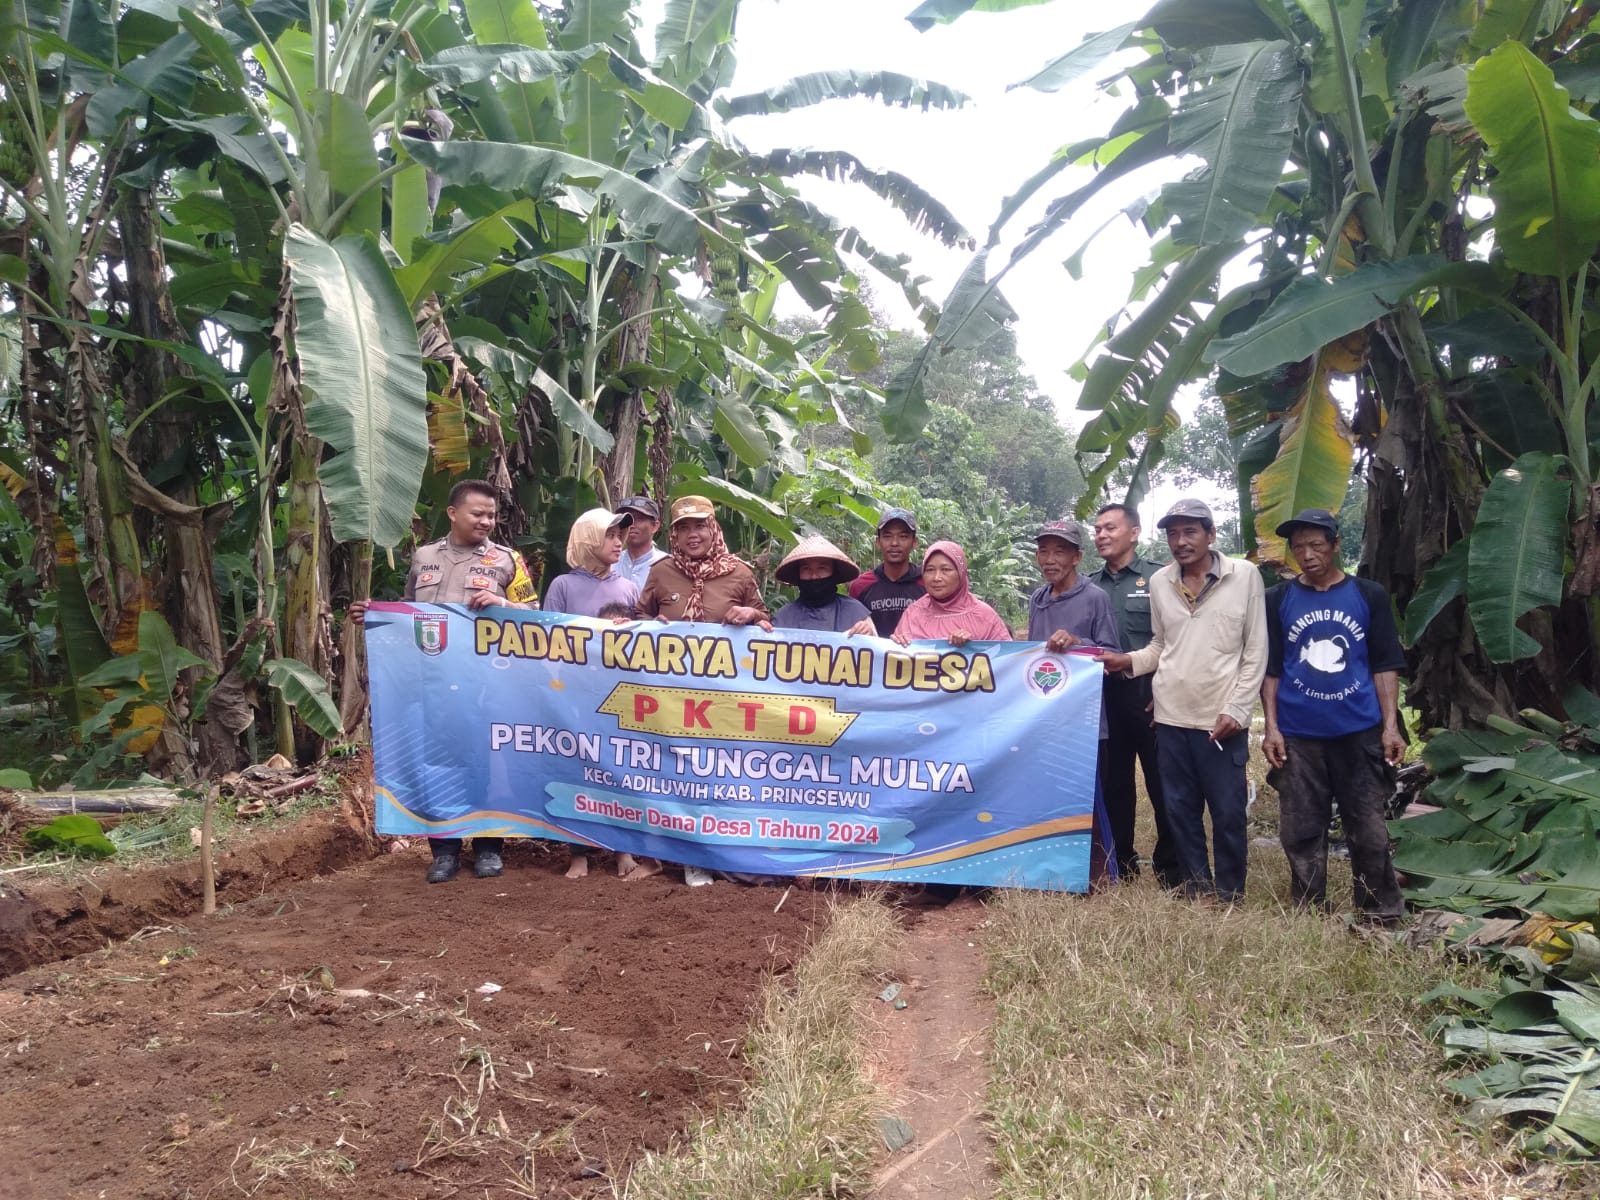 Pekon Tri Tunggal Mulya Buka Badan Jalan melalui Program Padat Karya Tunai Desa 